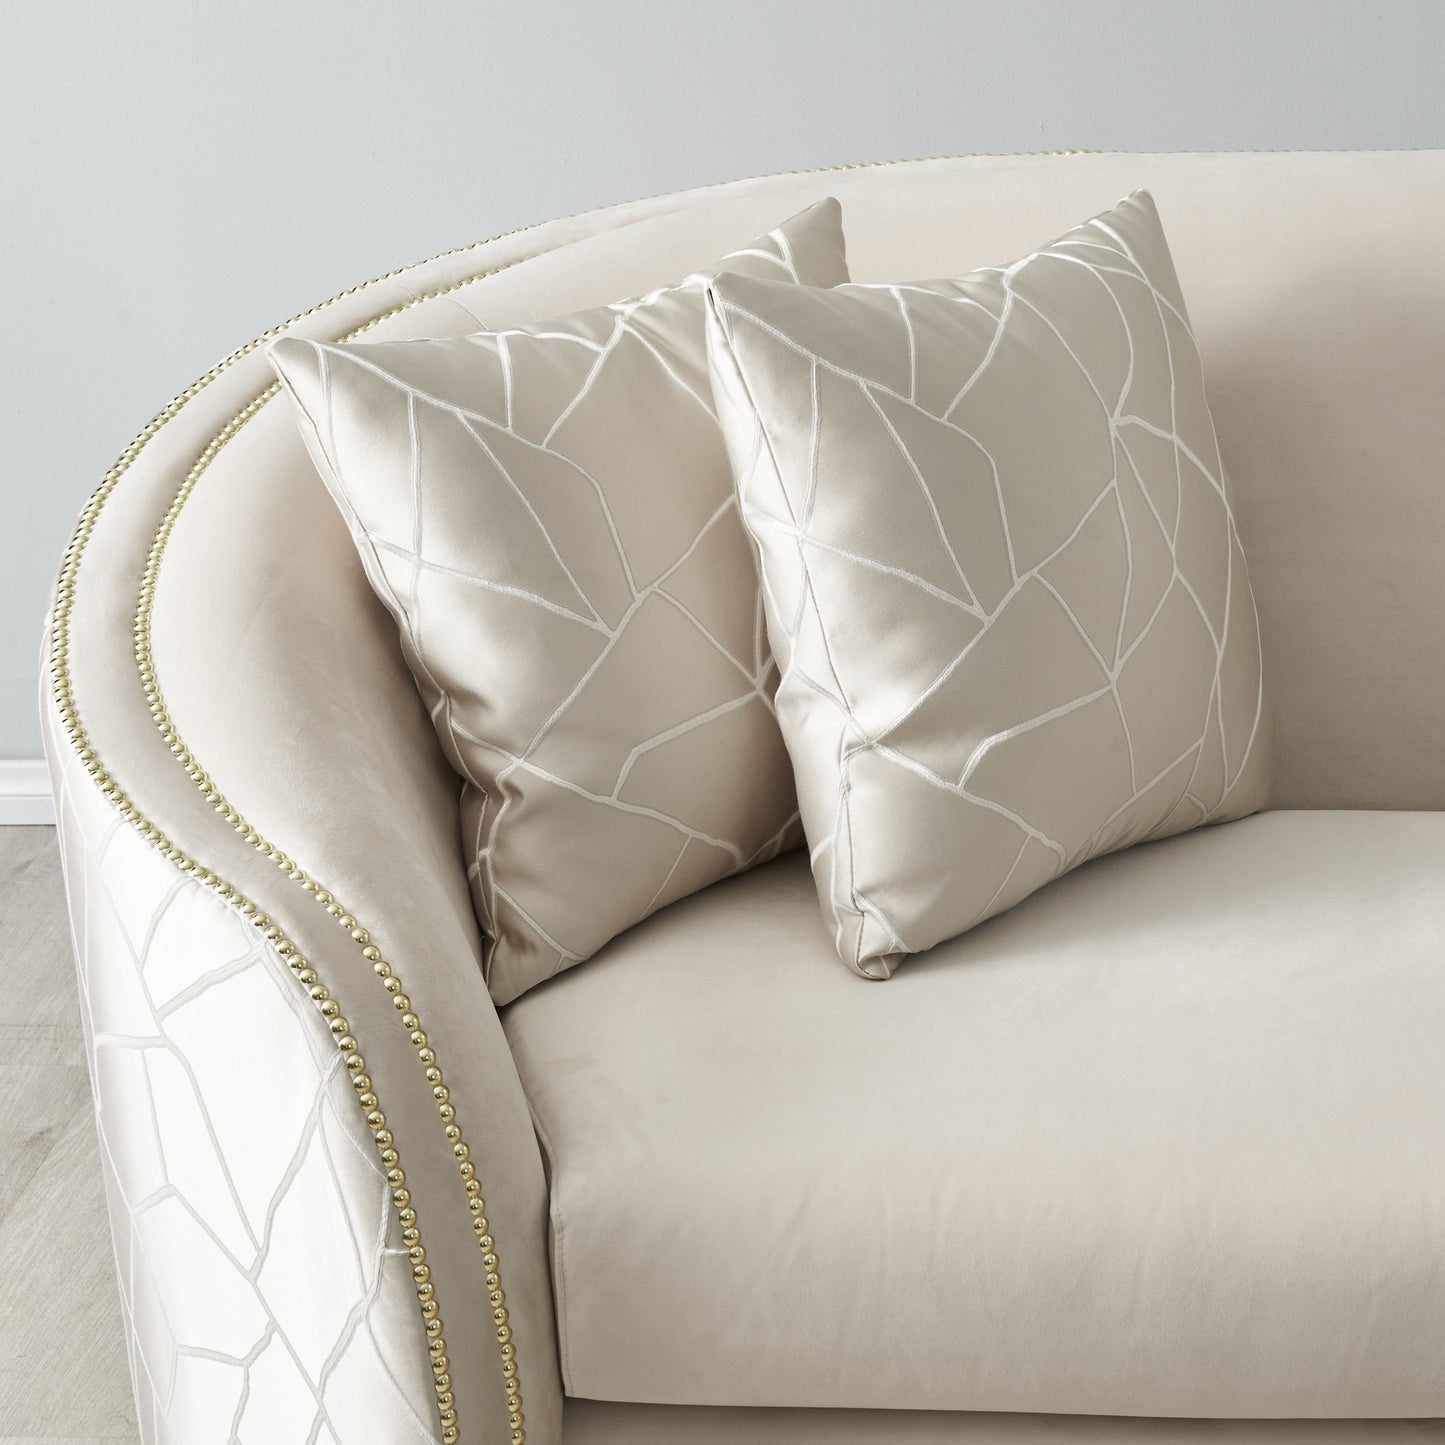 Hyna Cream Velvet 3-Seater Sofa